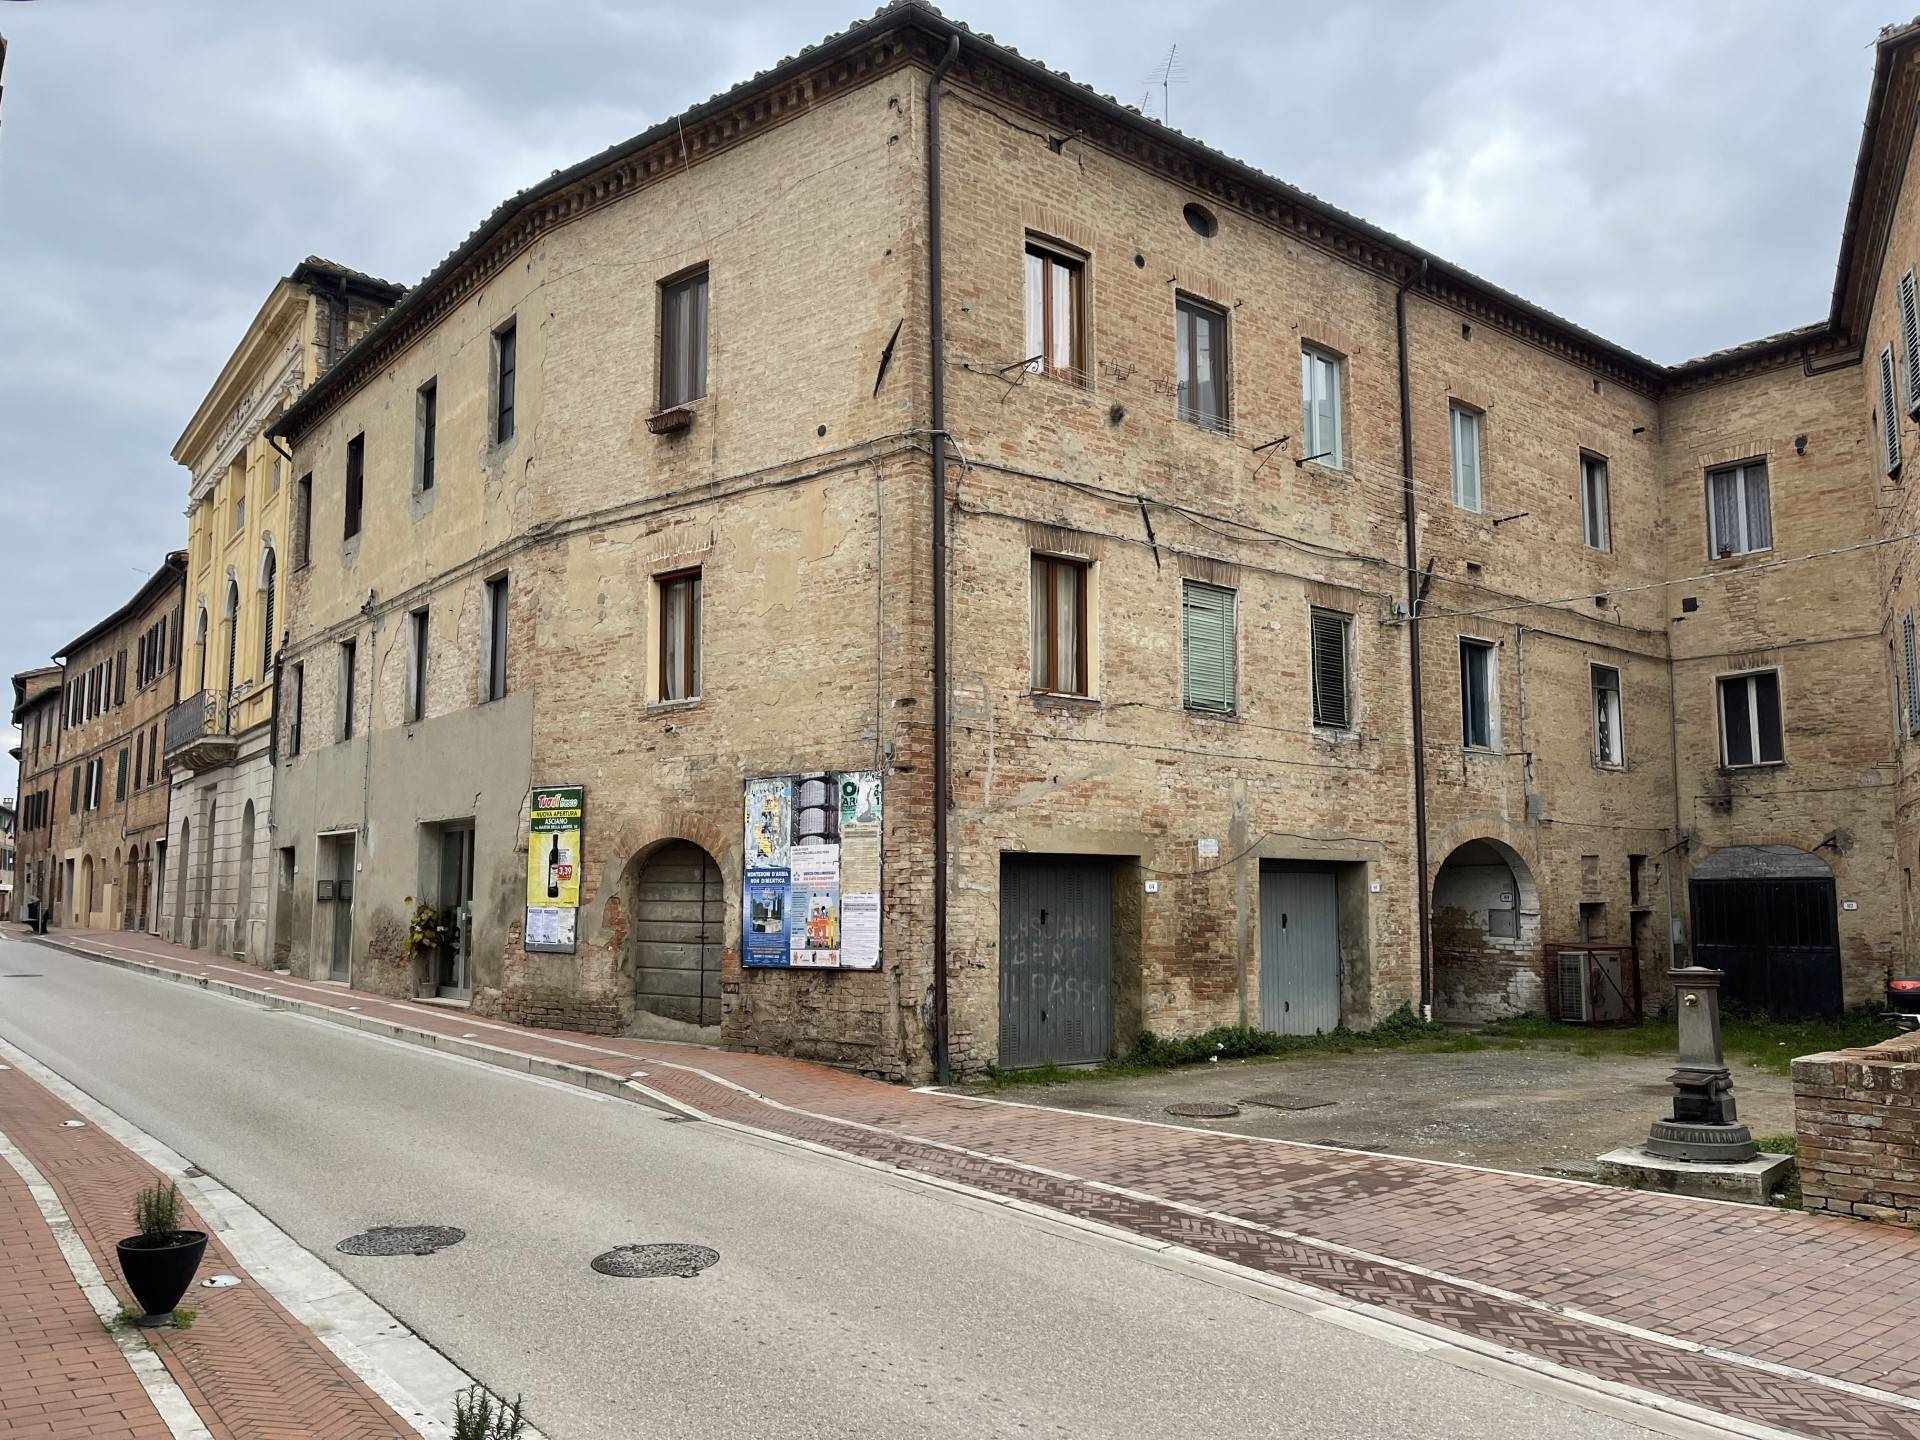 Occasione: Monteroni d'Arbia in Via Roma, in posizione centrale, appartamento situato al primo piano di un antico palazzo ed è composto da un 